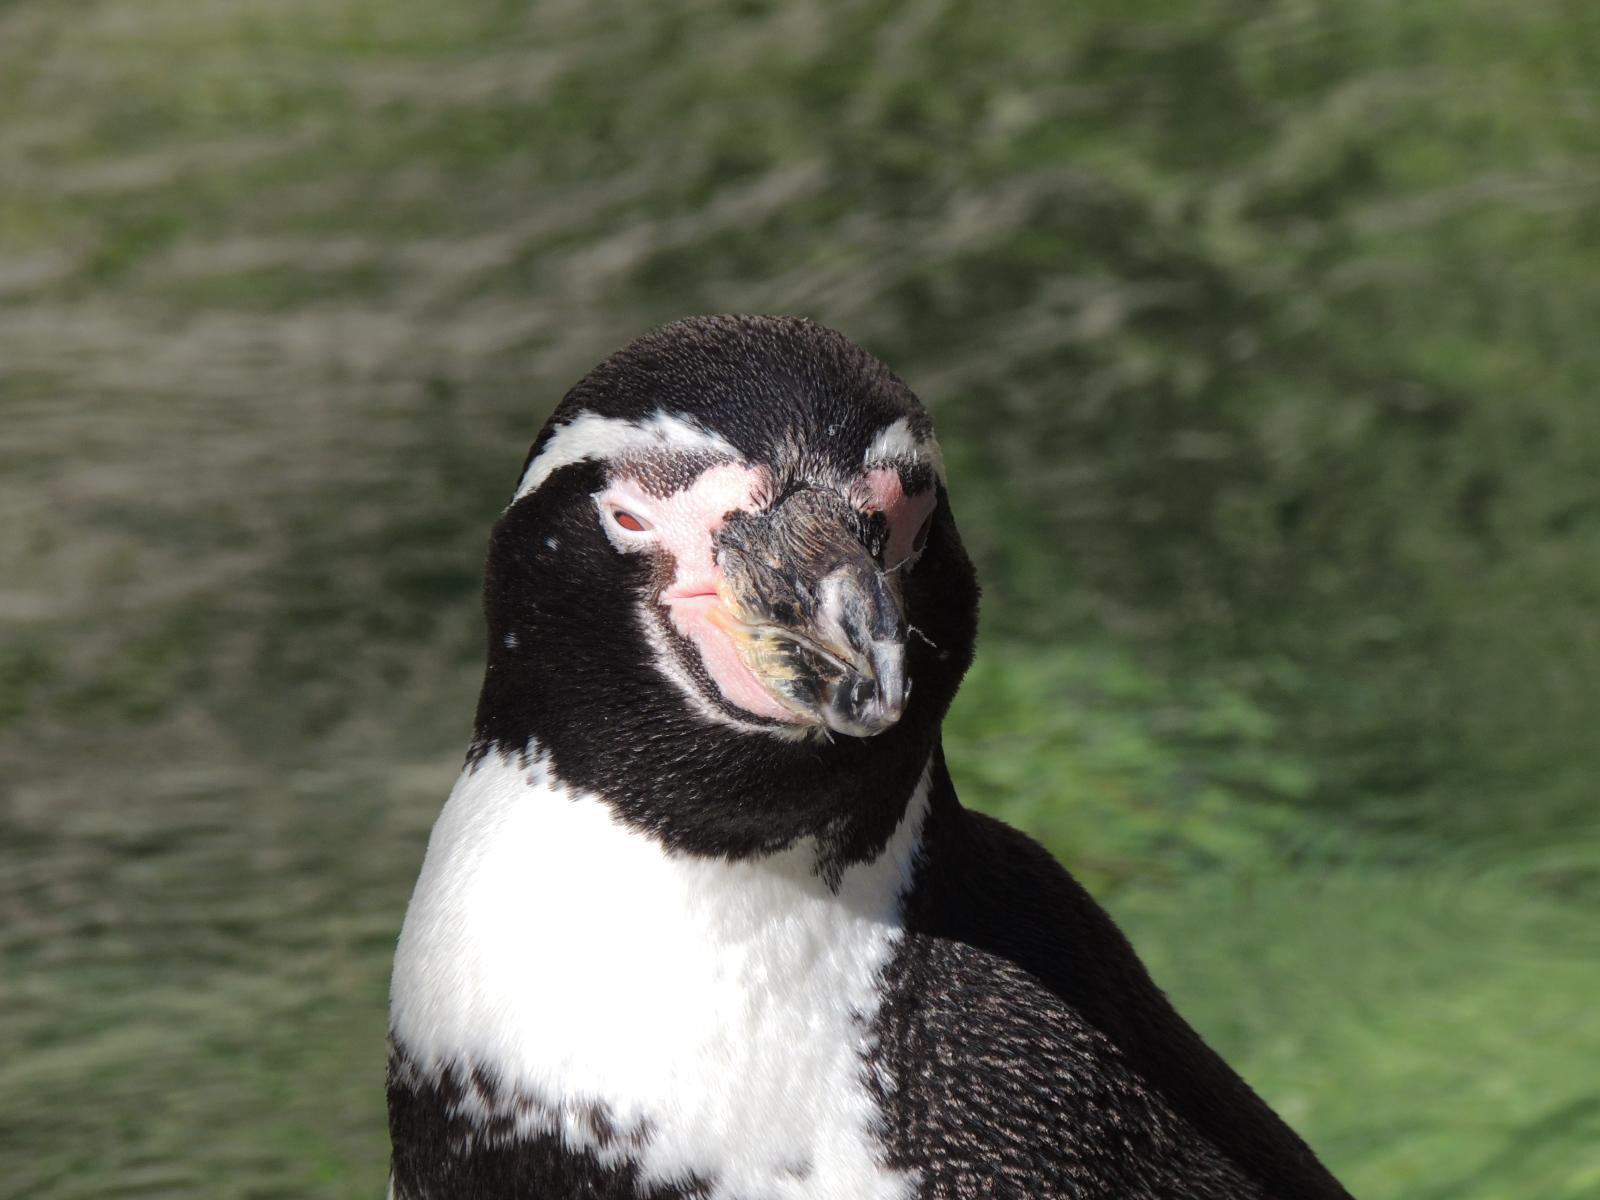 Humboldt Penguin Photo by Tony Heindel